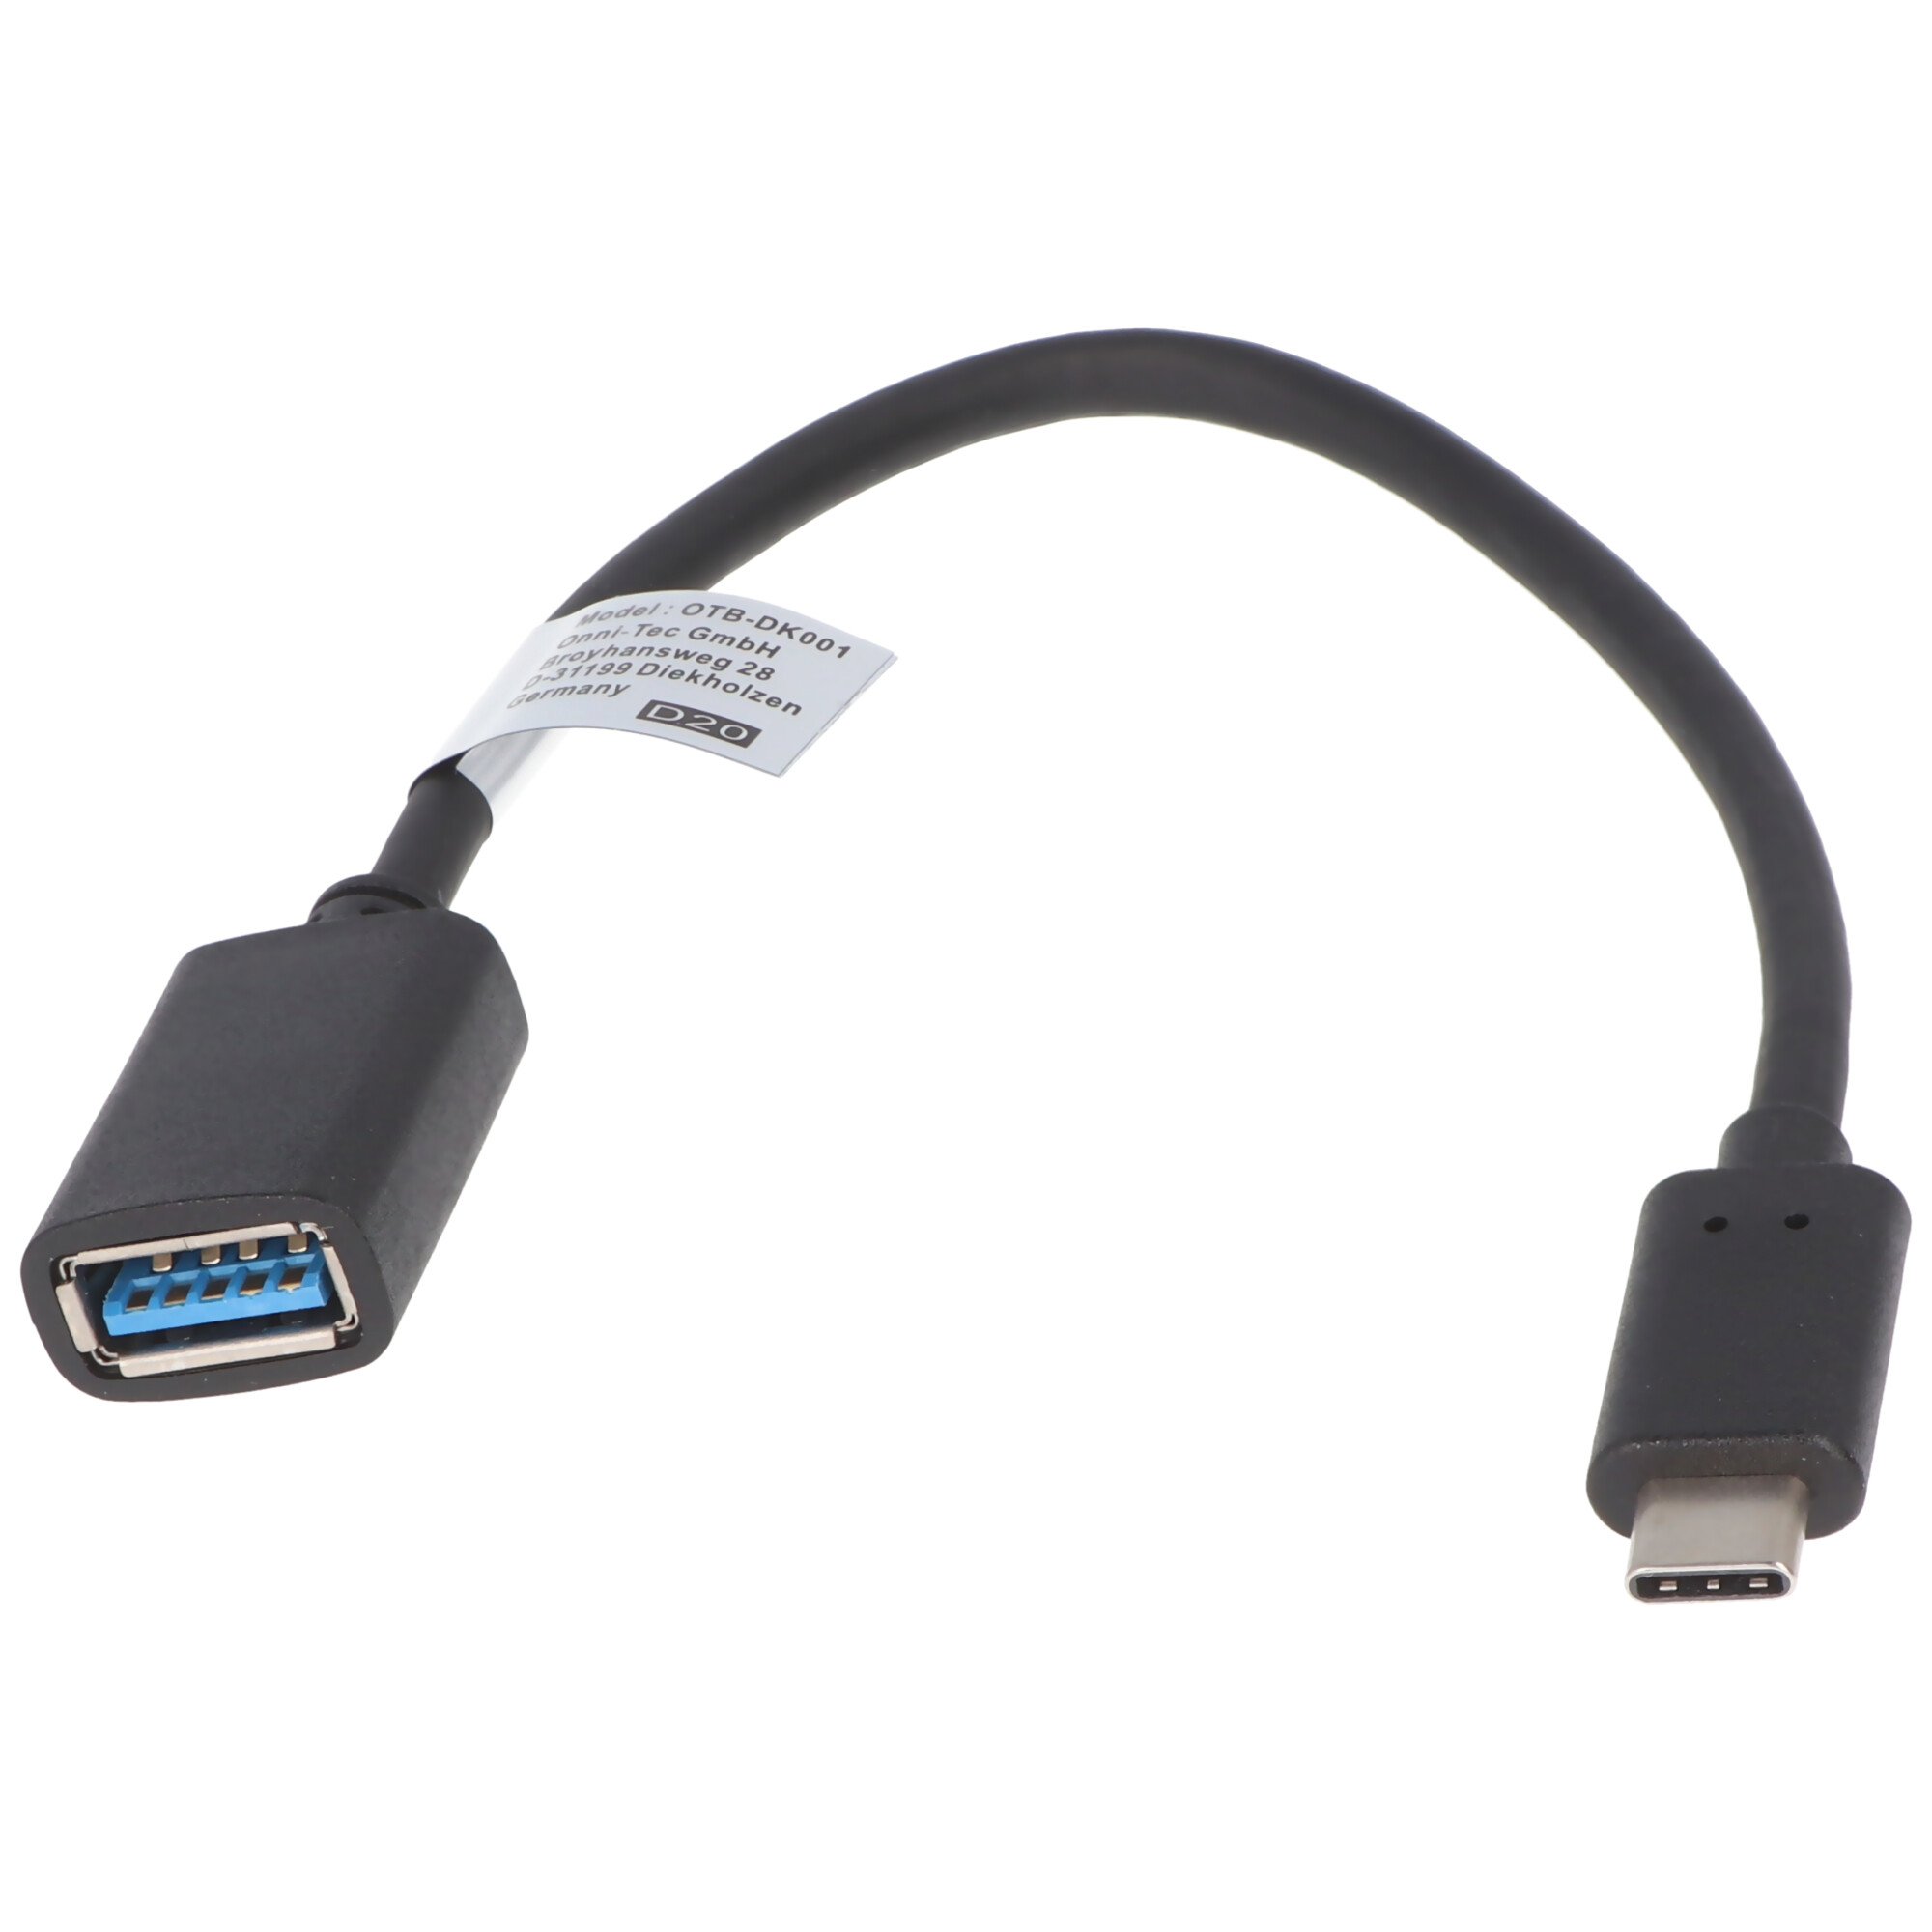 Adapter kompatibel zu USB Type C (USB-C) Stecker auf USB-A 3.0 Buchse - mit Kabel - OTG Support